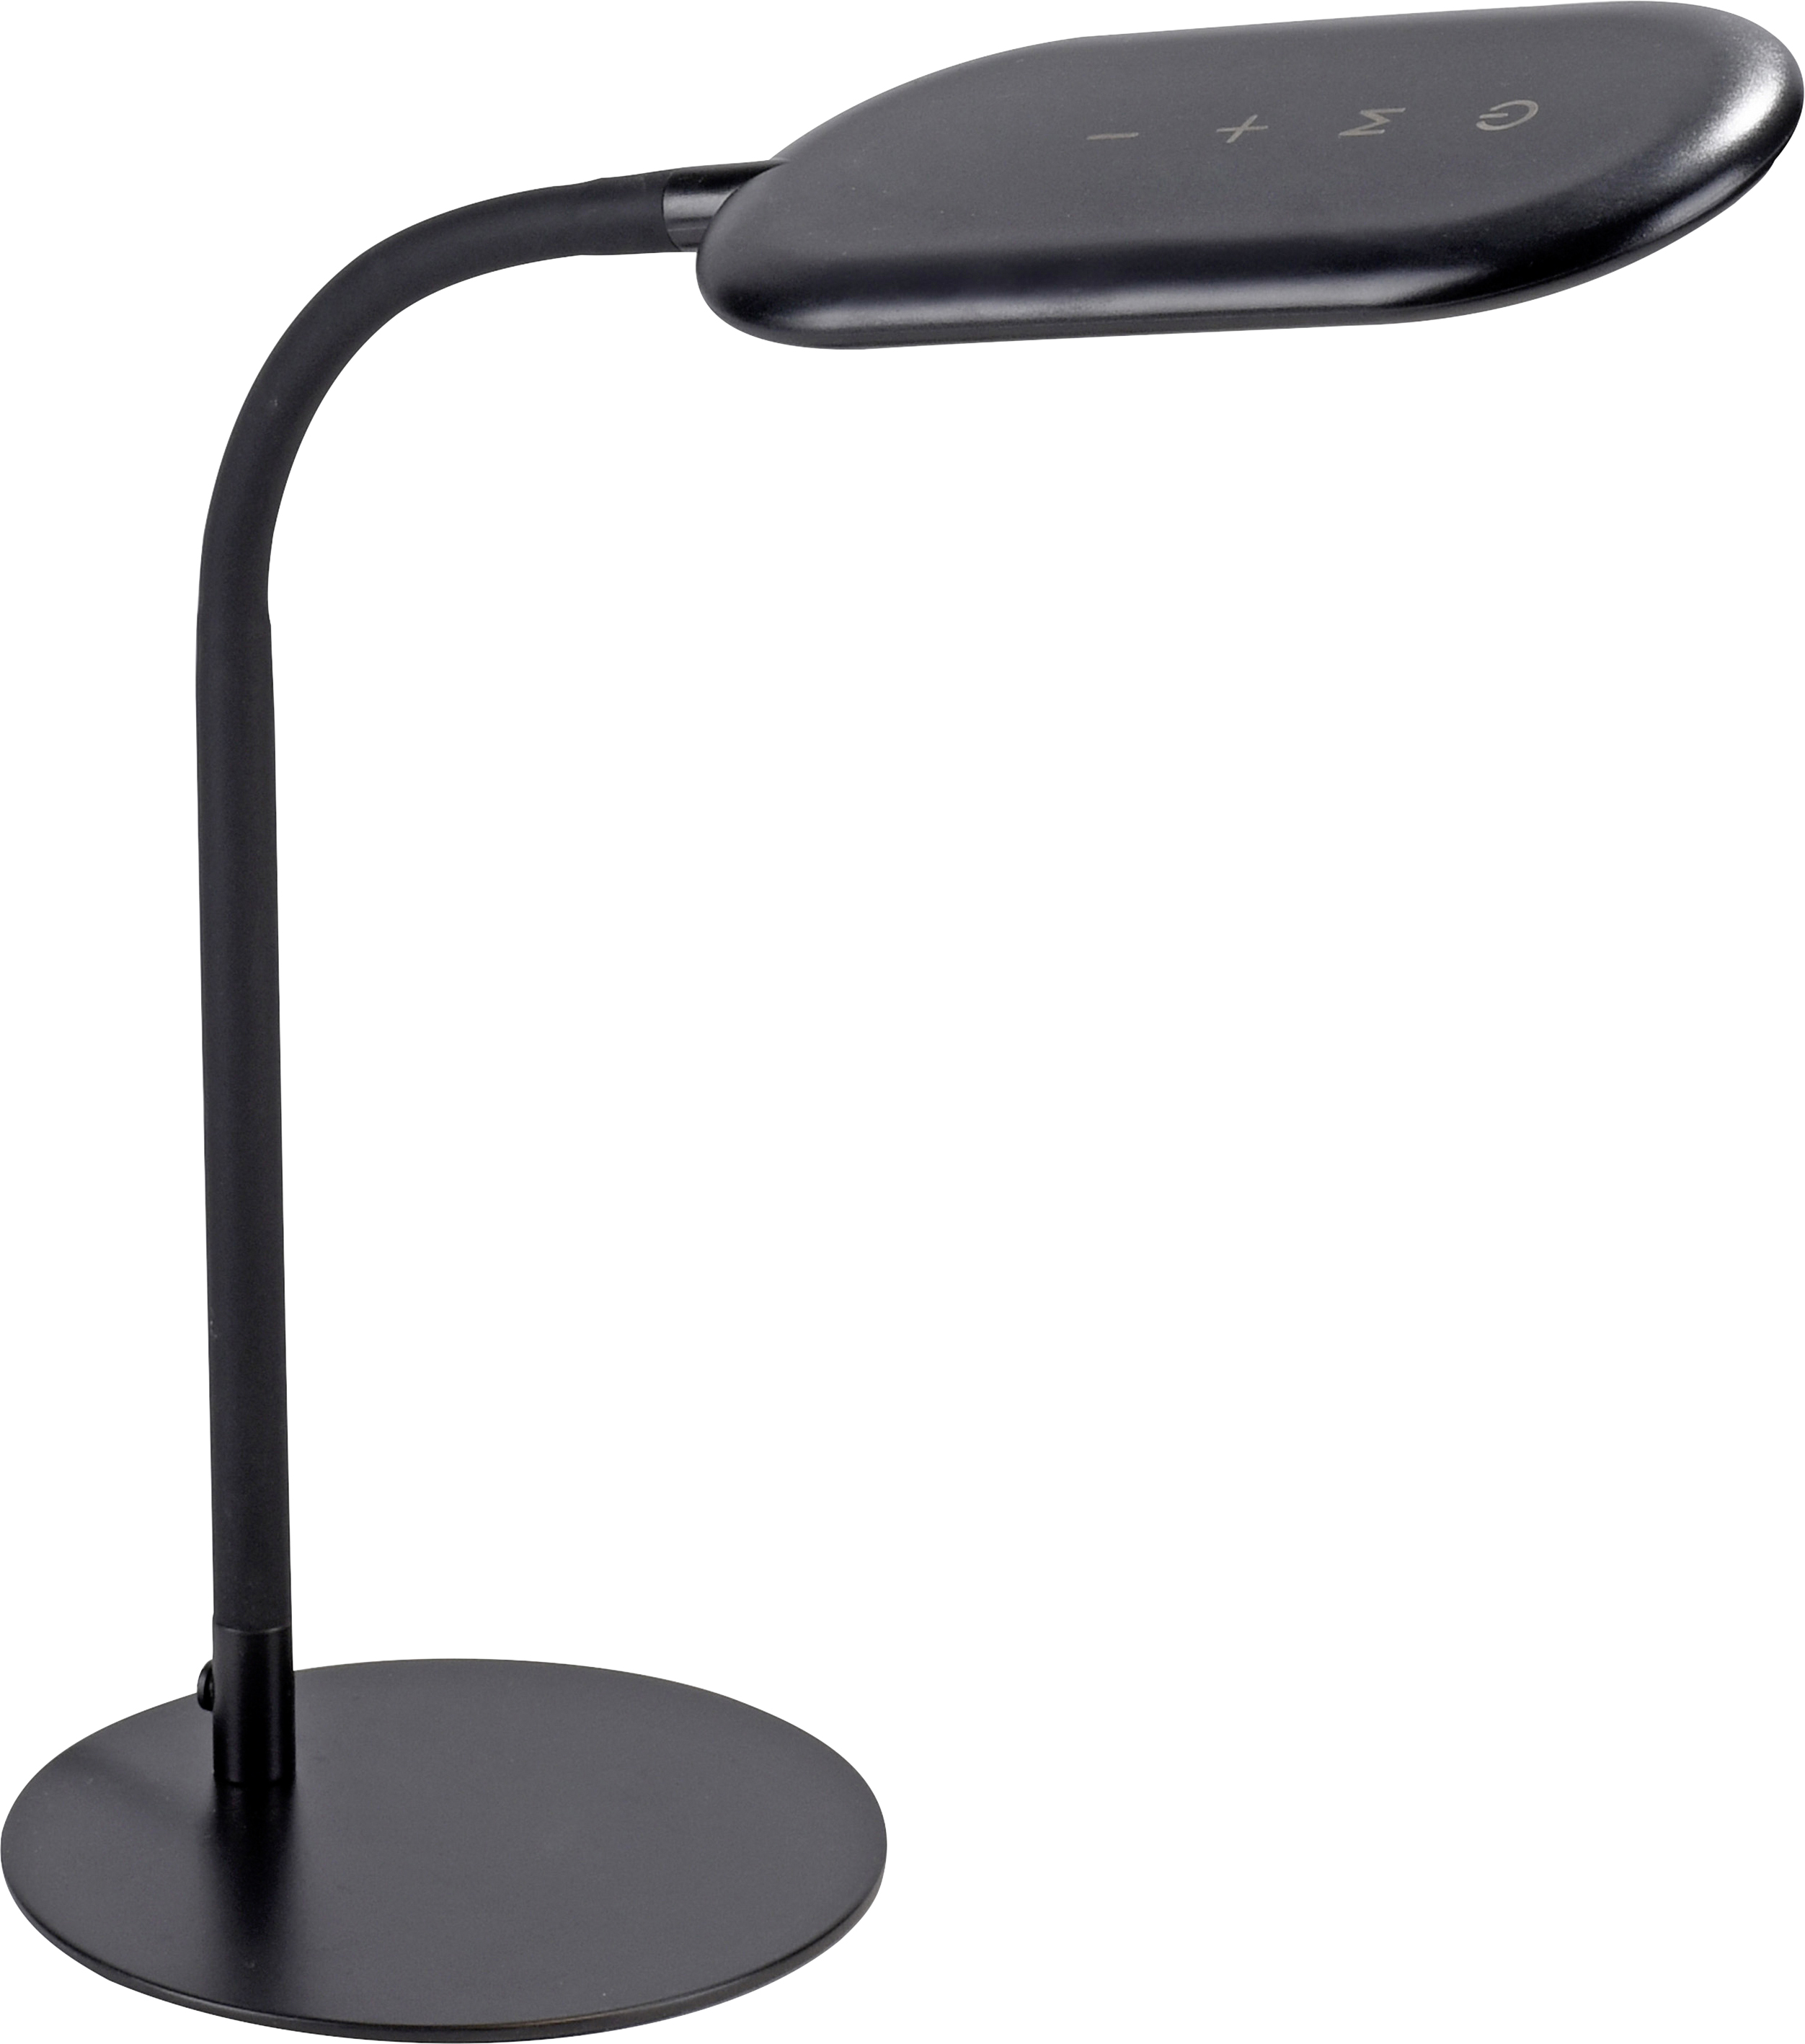 Tischlampen günstig kaufen | Globus Baumarkt | Tischlampen